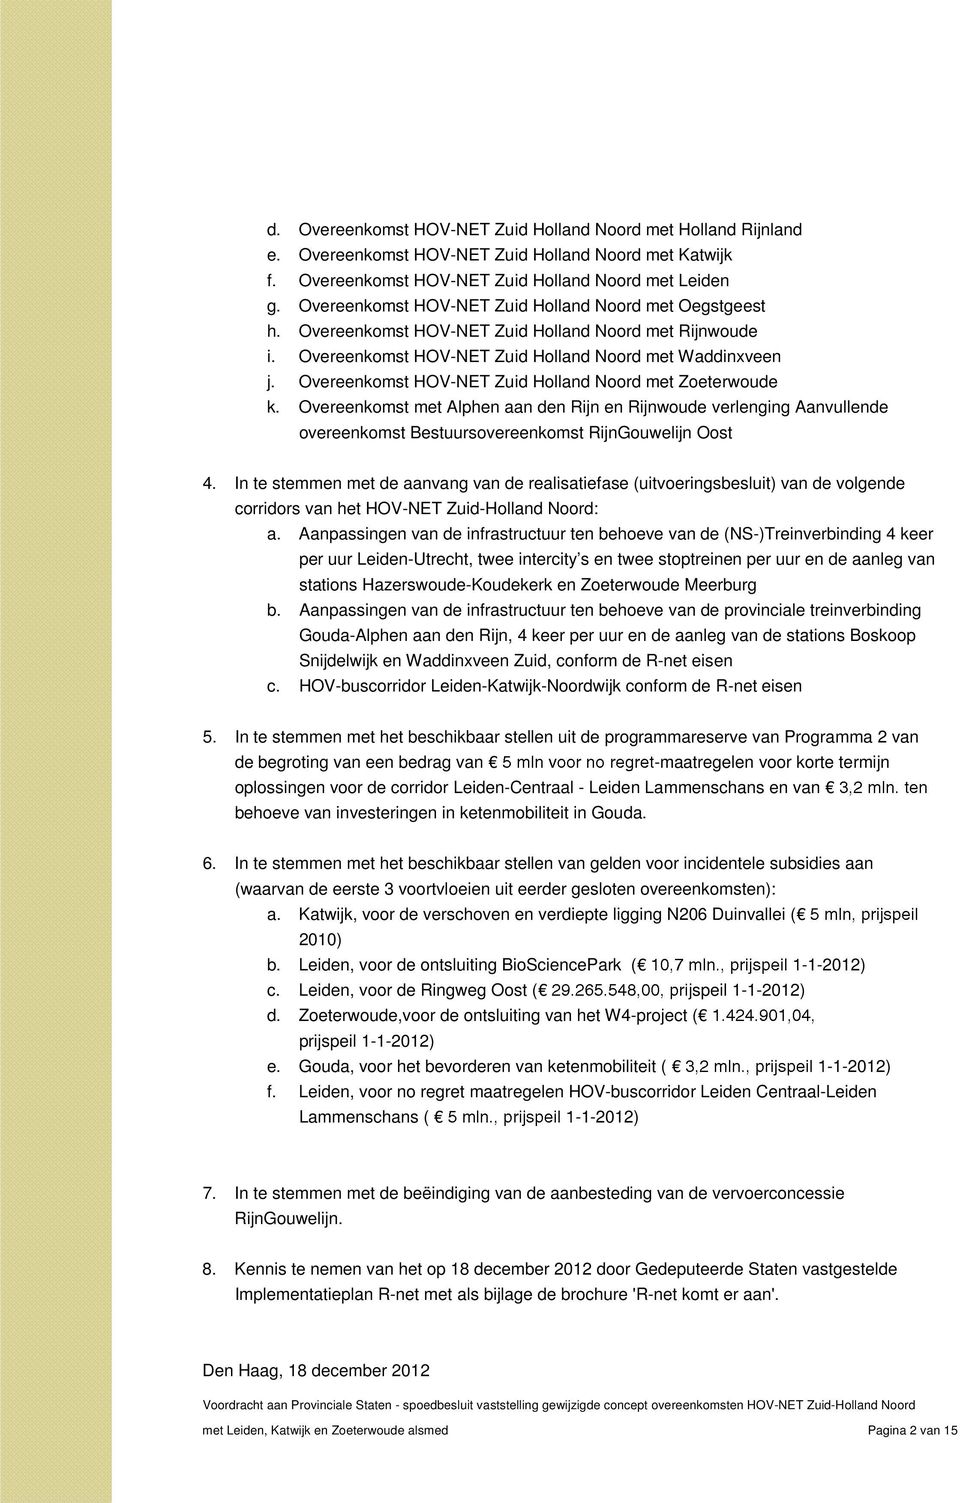 Overeenkomst HOV-NET Zuid Holland Noord met Zoeterwoude k. Overeenkomst met Alphen aan den Rijn en Rijnwoude verlenging Aanvullende overeenkomst Bestuursovereenkomst RijnGouwelijn Oost 4.